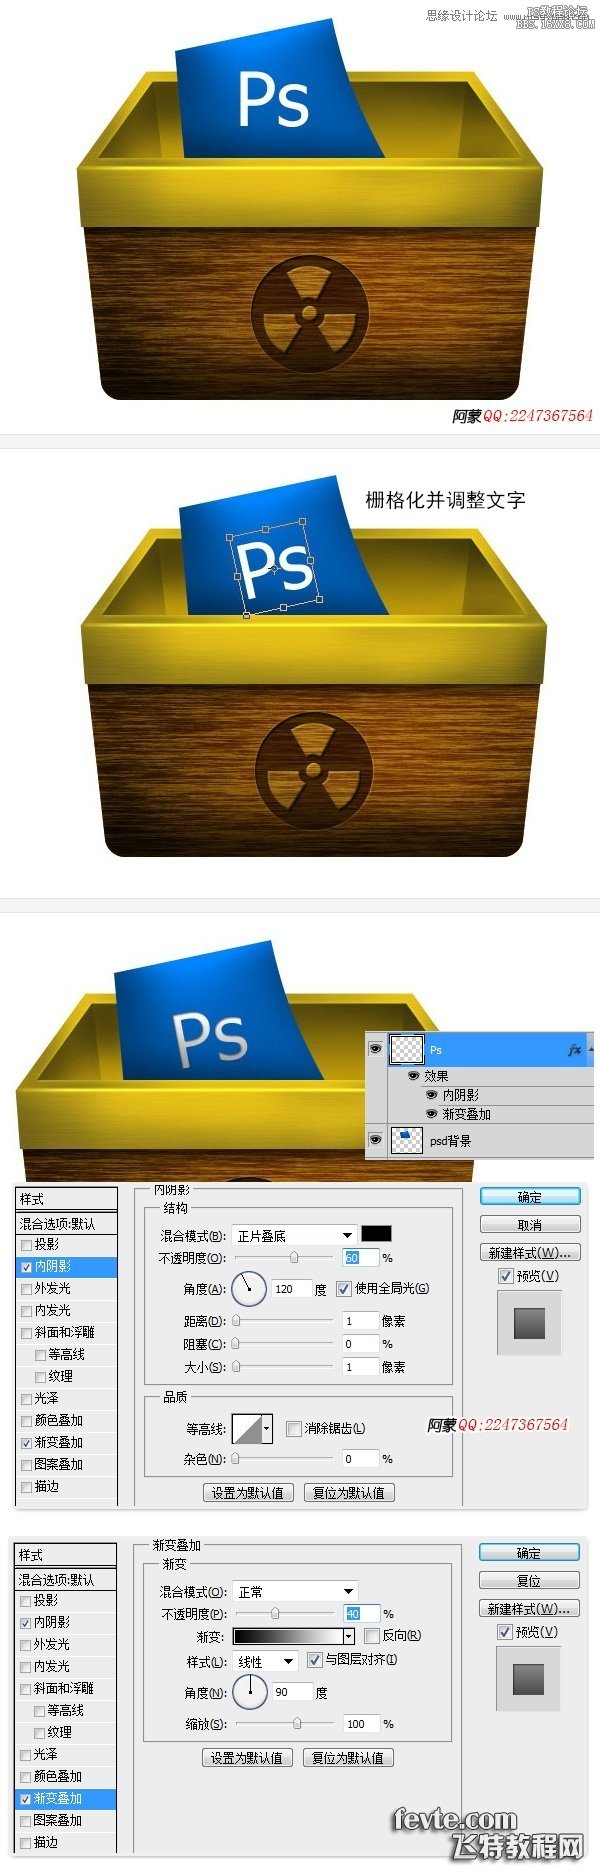 Photoshop设计质感的木箱子网页图标,PS教程,16xx8.com教程网